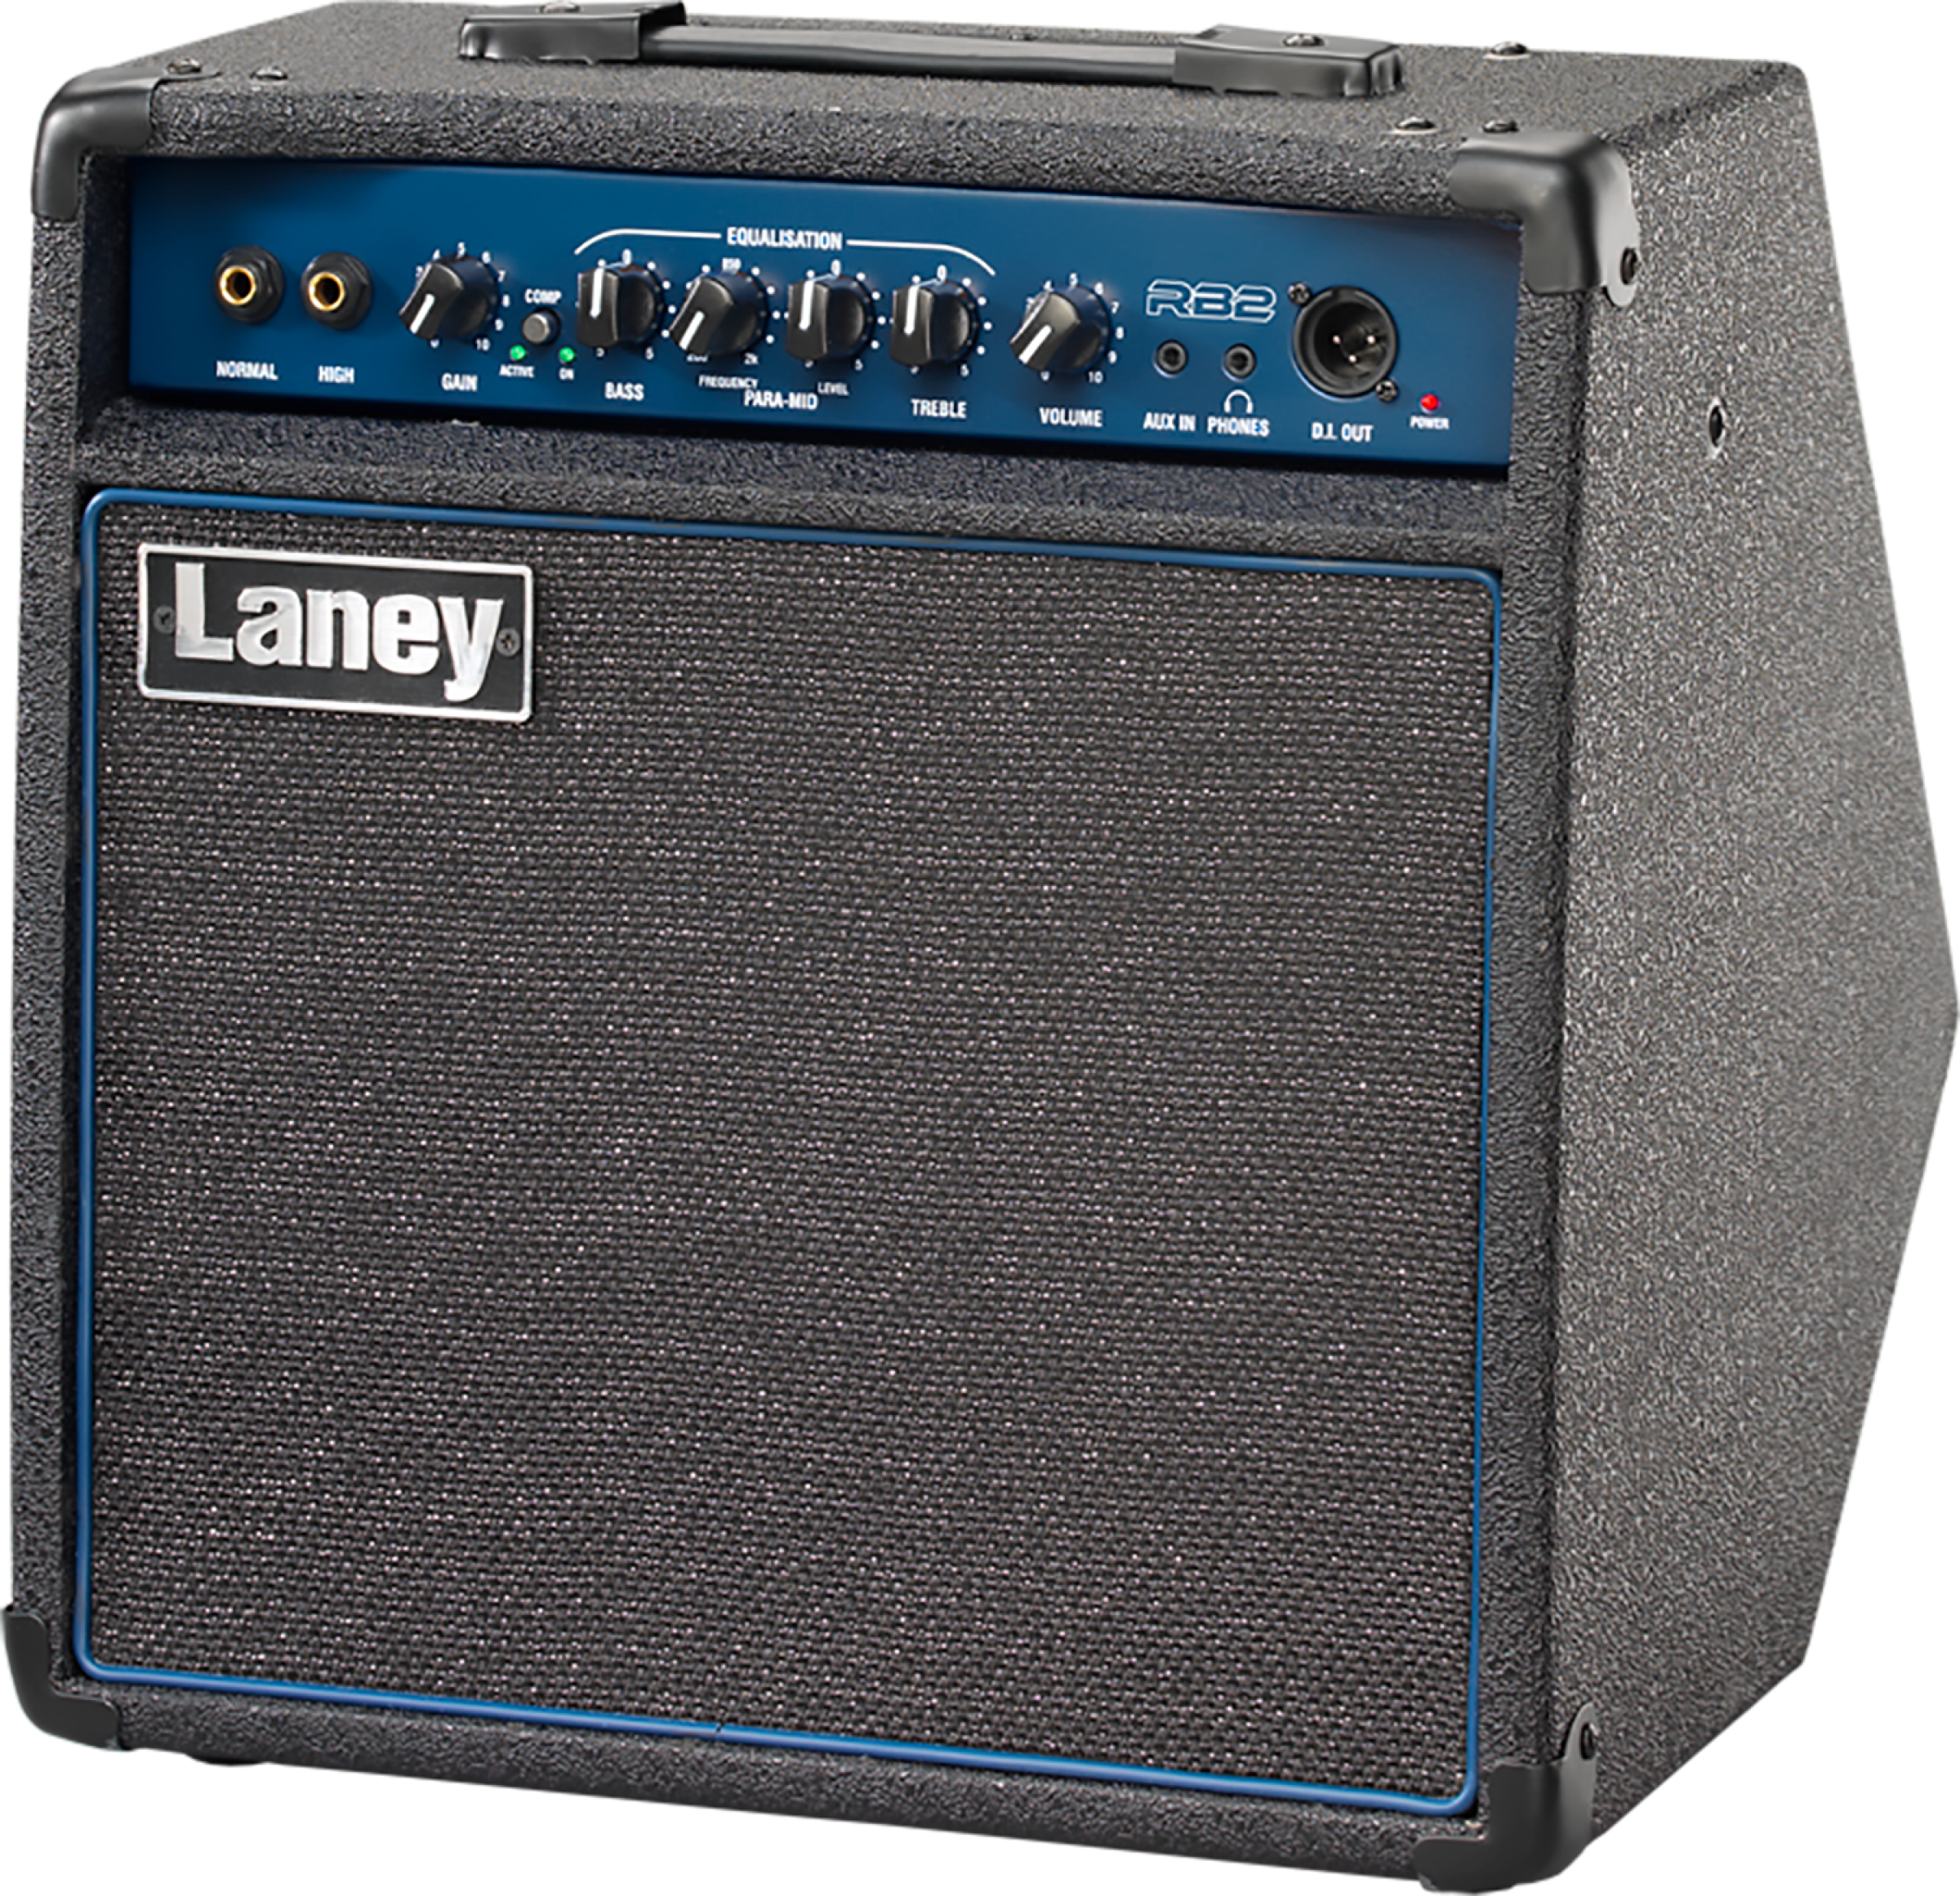 Laney Rb2 30w 1x10 - Combo amplificador para bajo - Variation 2